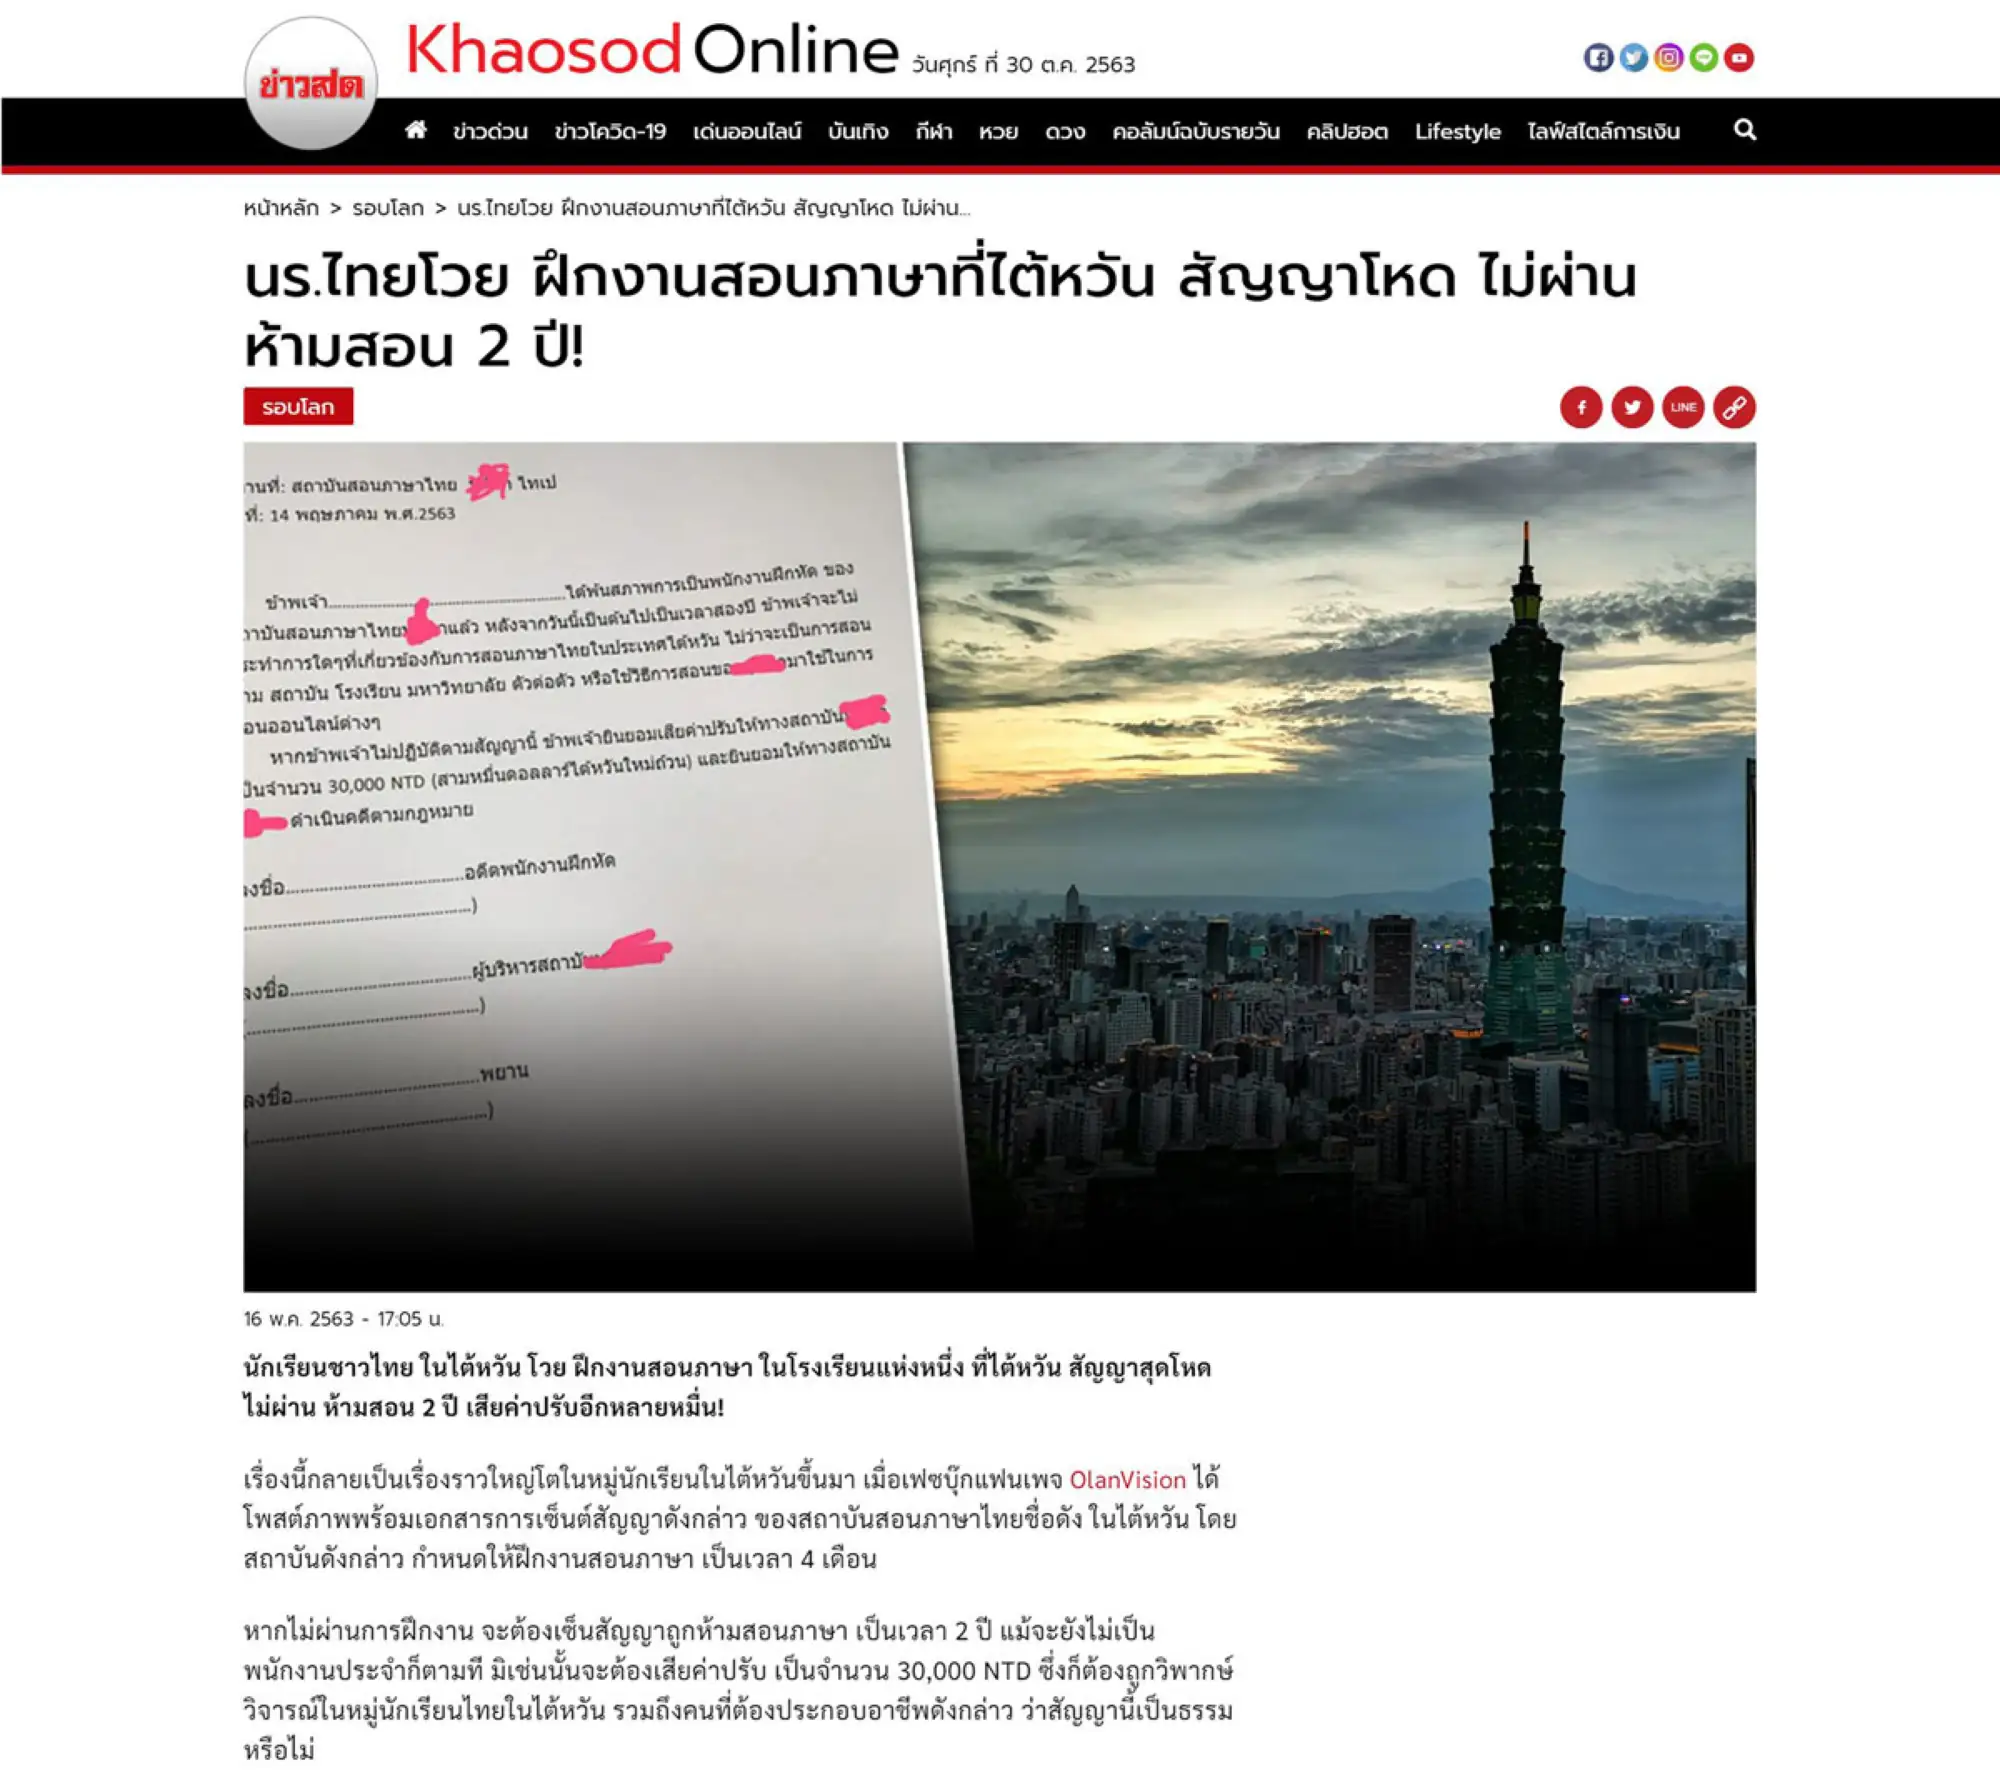 泰國媒體鮮新聞Khaosod於2020年5月16日報導泰國目的達教室事件